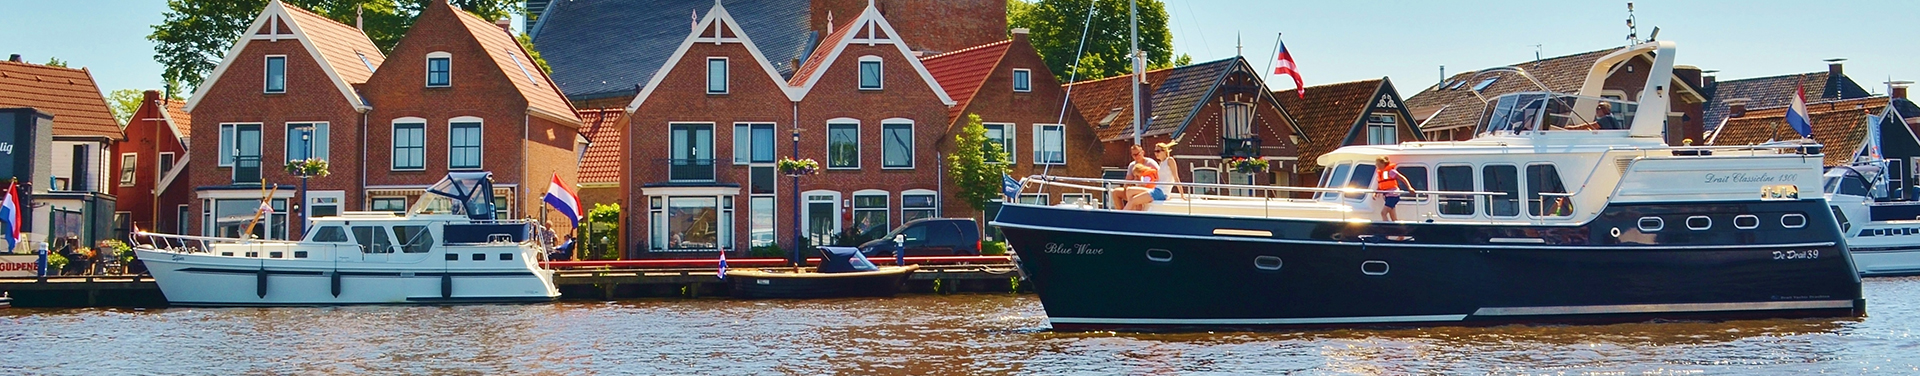 שייט תעלות Canal for Rembrandt בהולנד